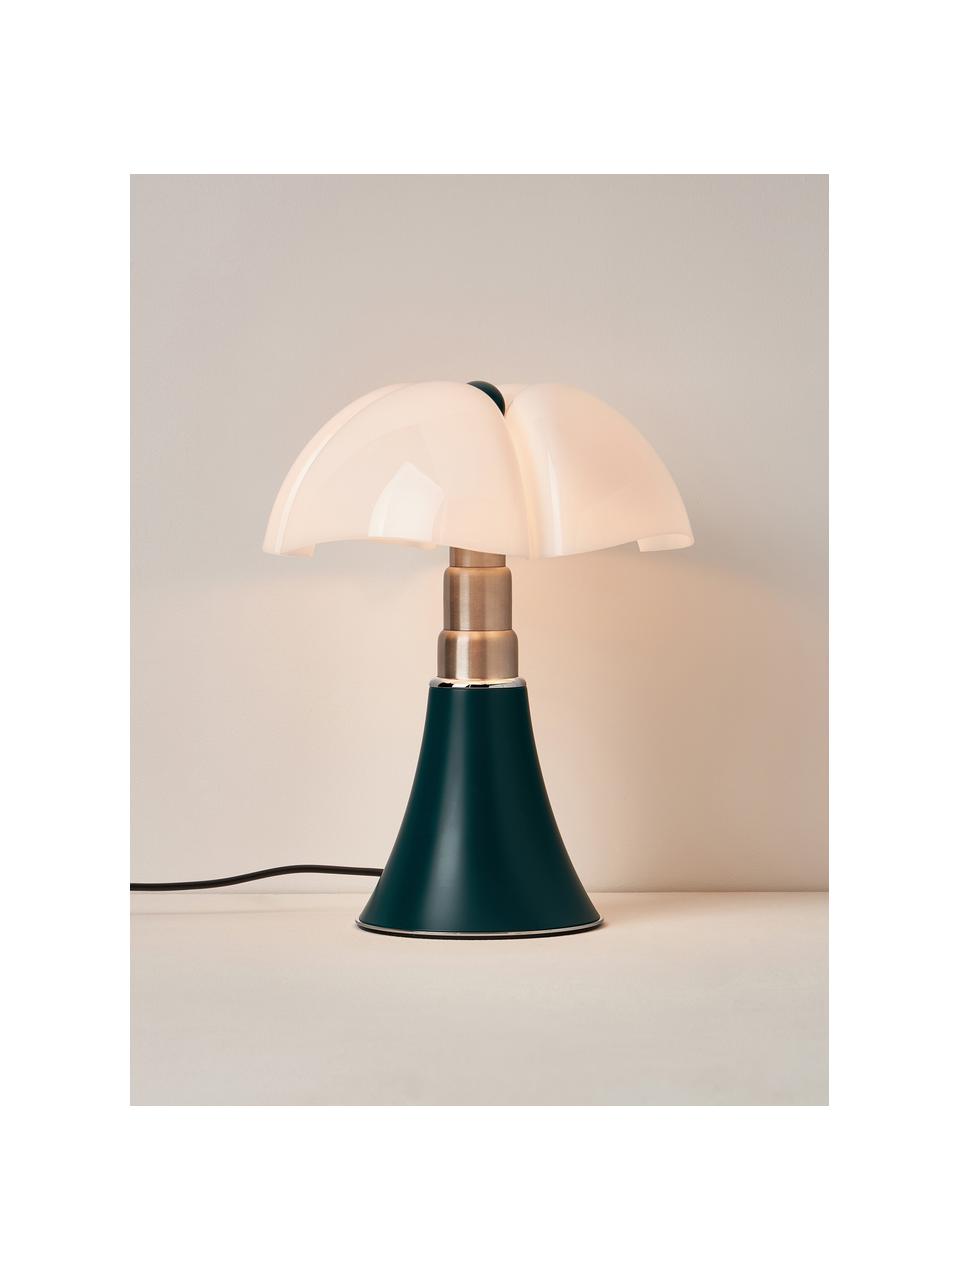 Lampa stołowa LED z funkcją przyciemniania Pipistrello, Stelaż: metal, aluminium, lakiero, Petrol, matowy, Ø 27 x W 35 cm